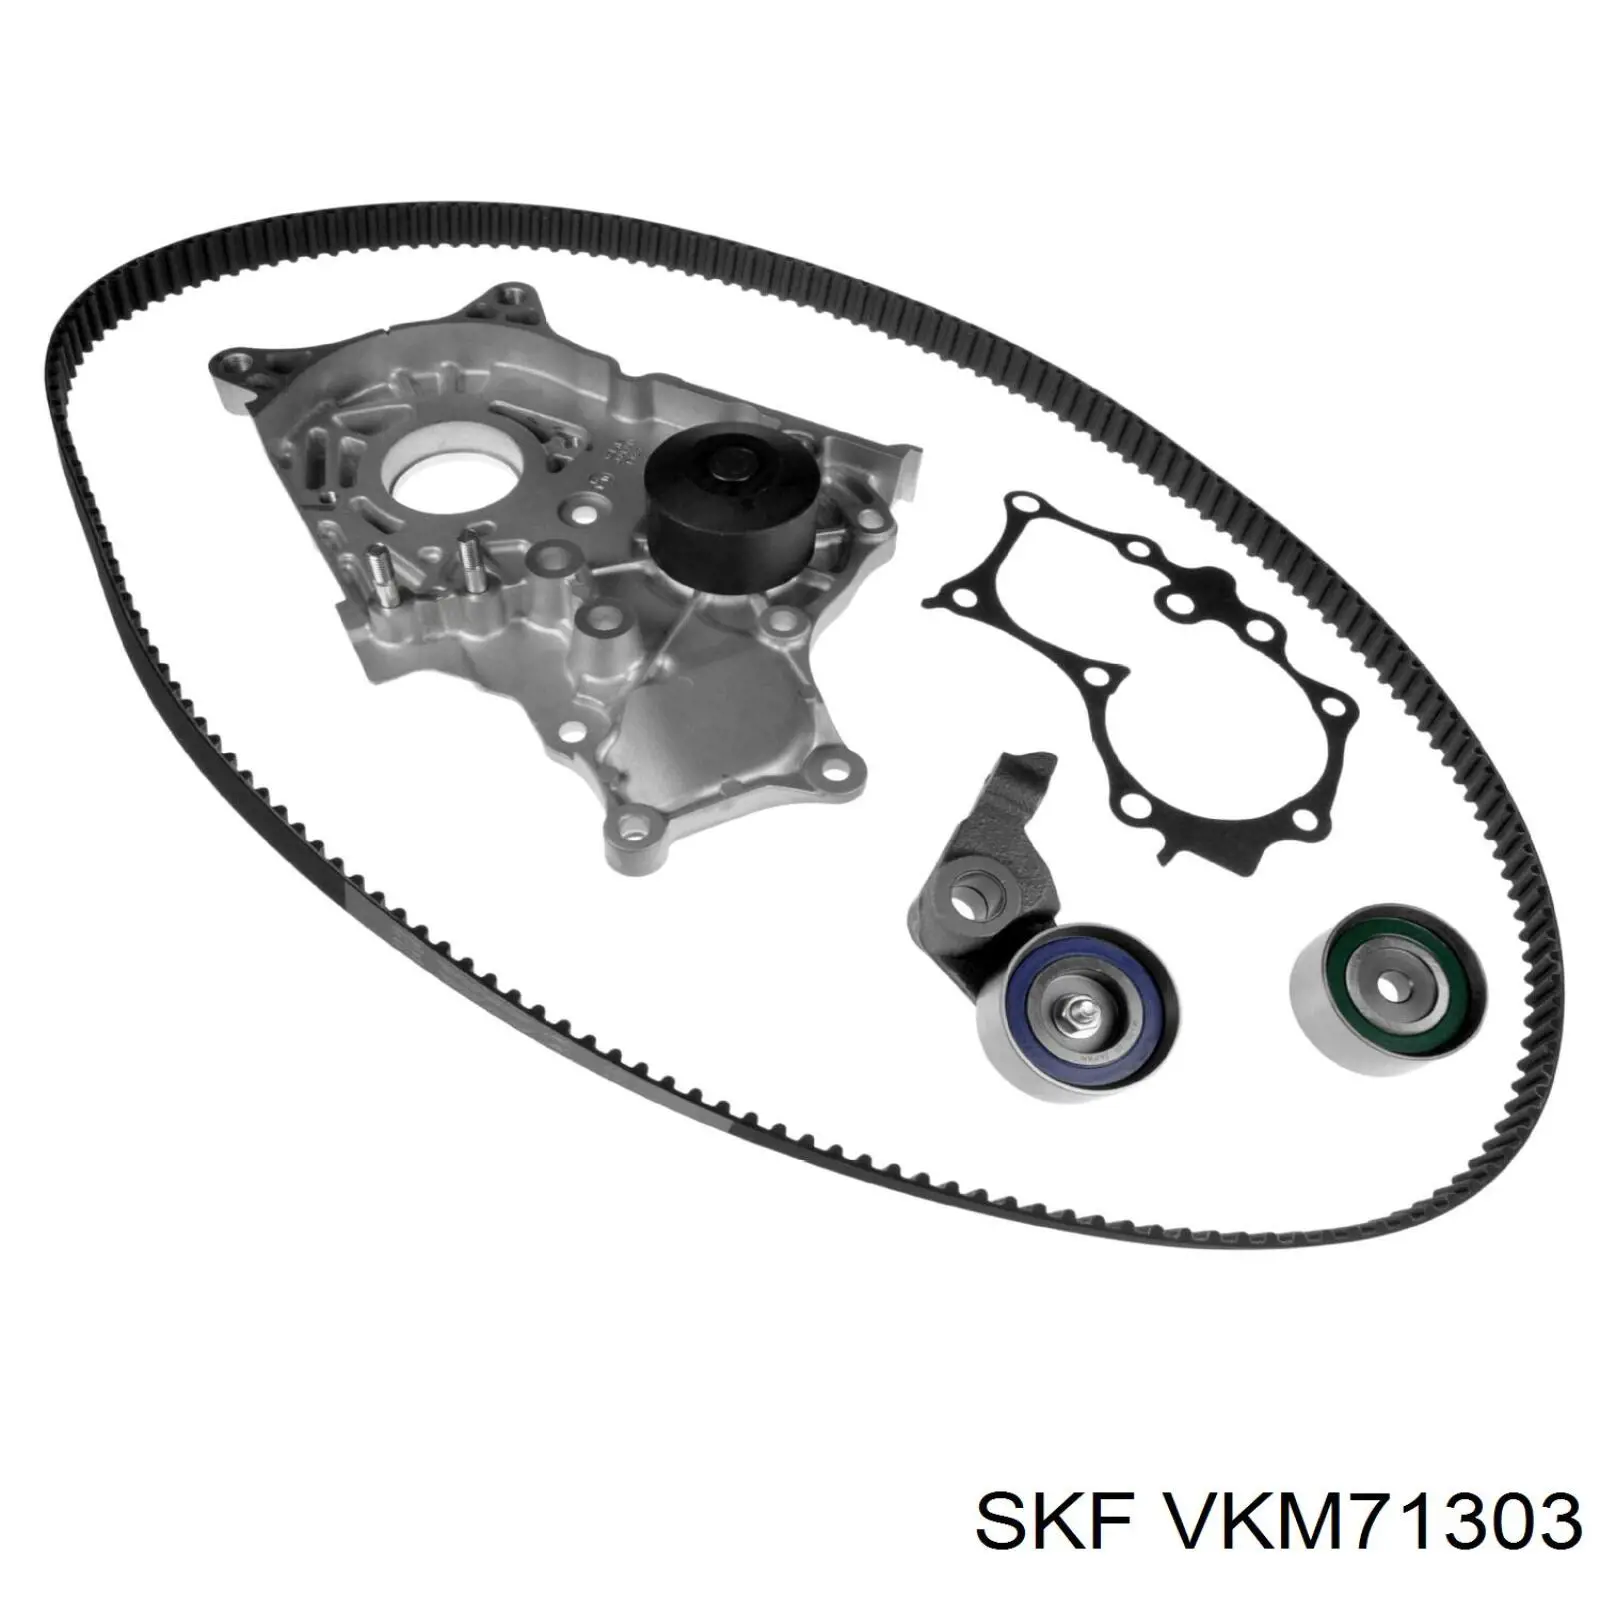 VKM 71303 SKF rodillo, cadena de distribución